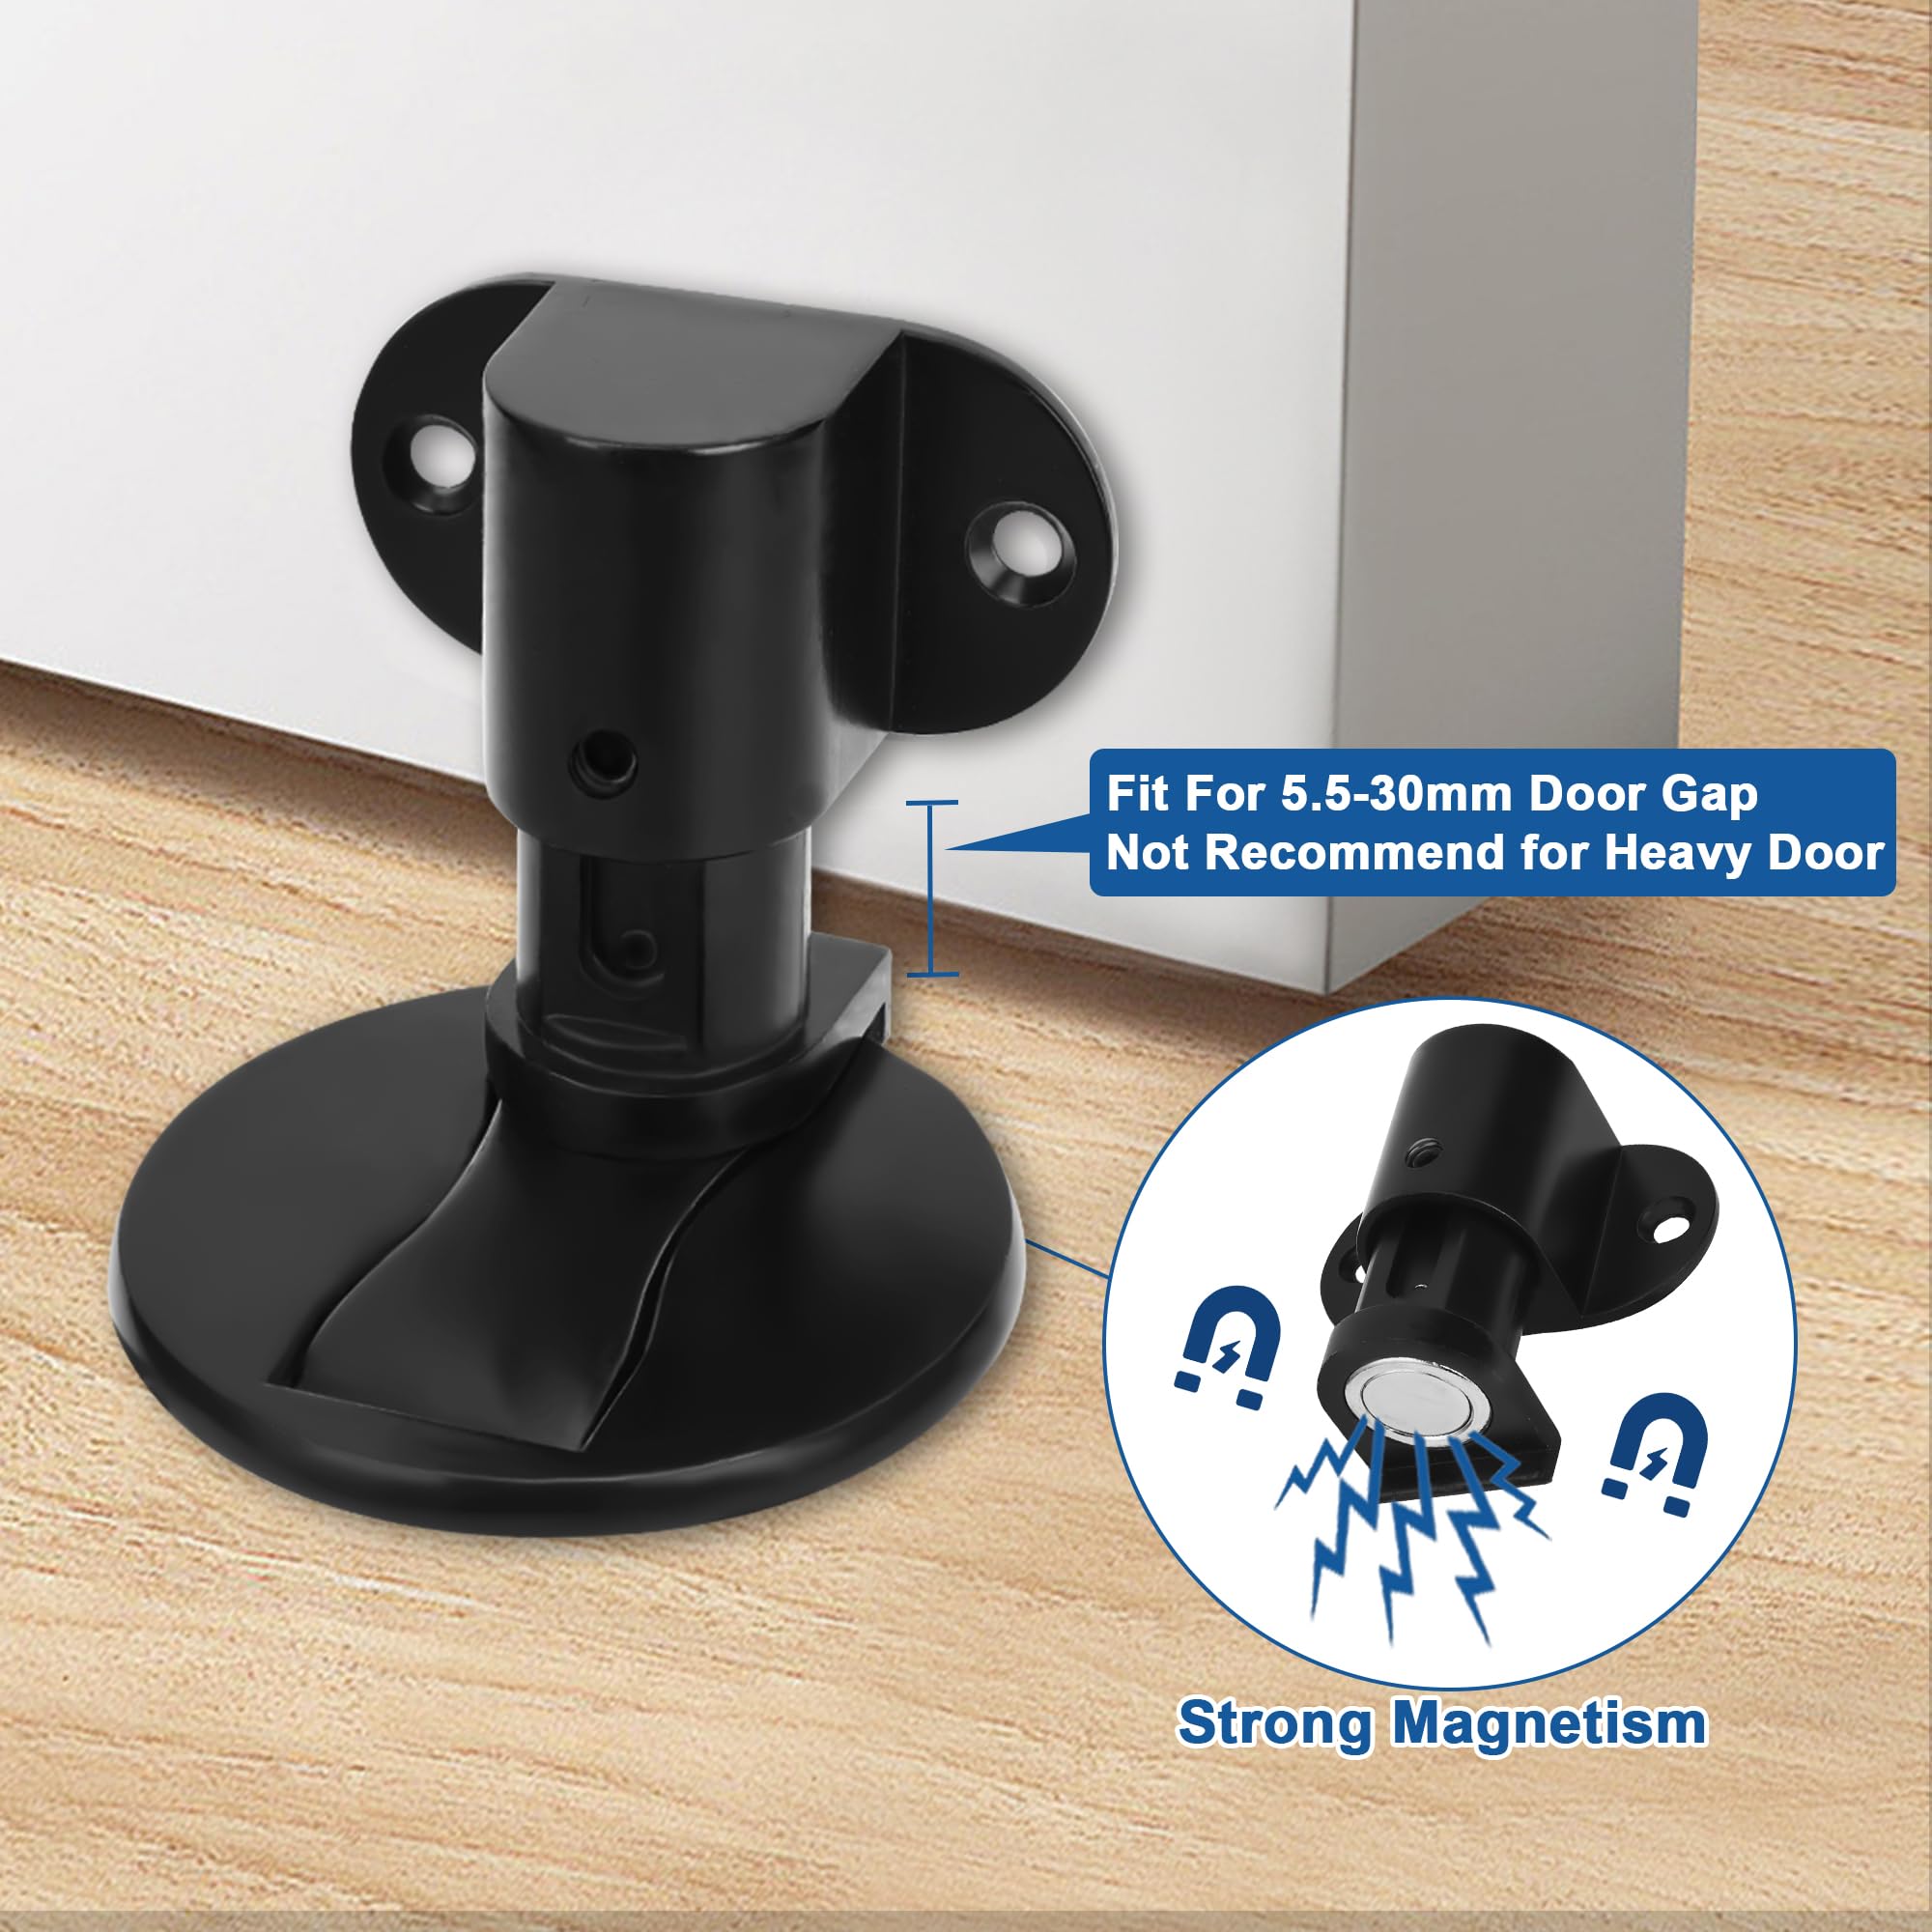 Wewemux 2 Pack Magnetic Door Stop,Adjustable Door Stopper,Floor Mount Door Holder,3M Adhesive No Drilling (Black)…